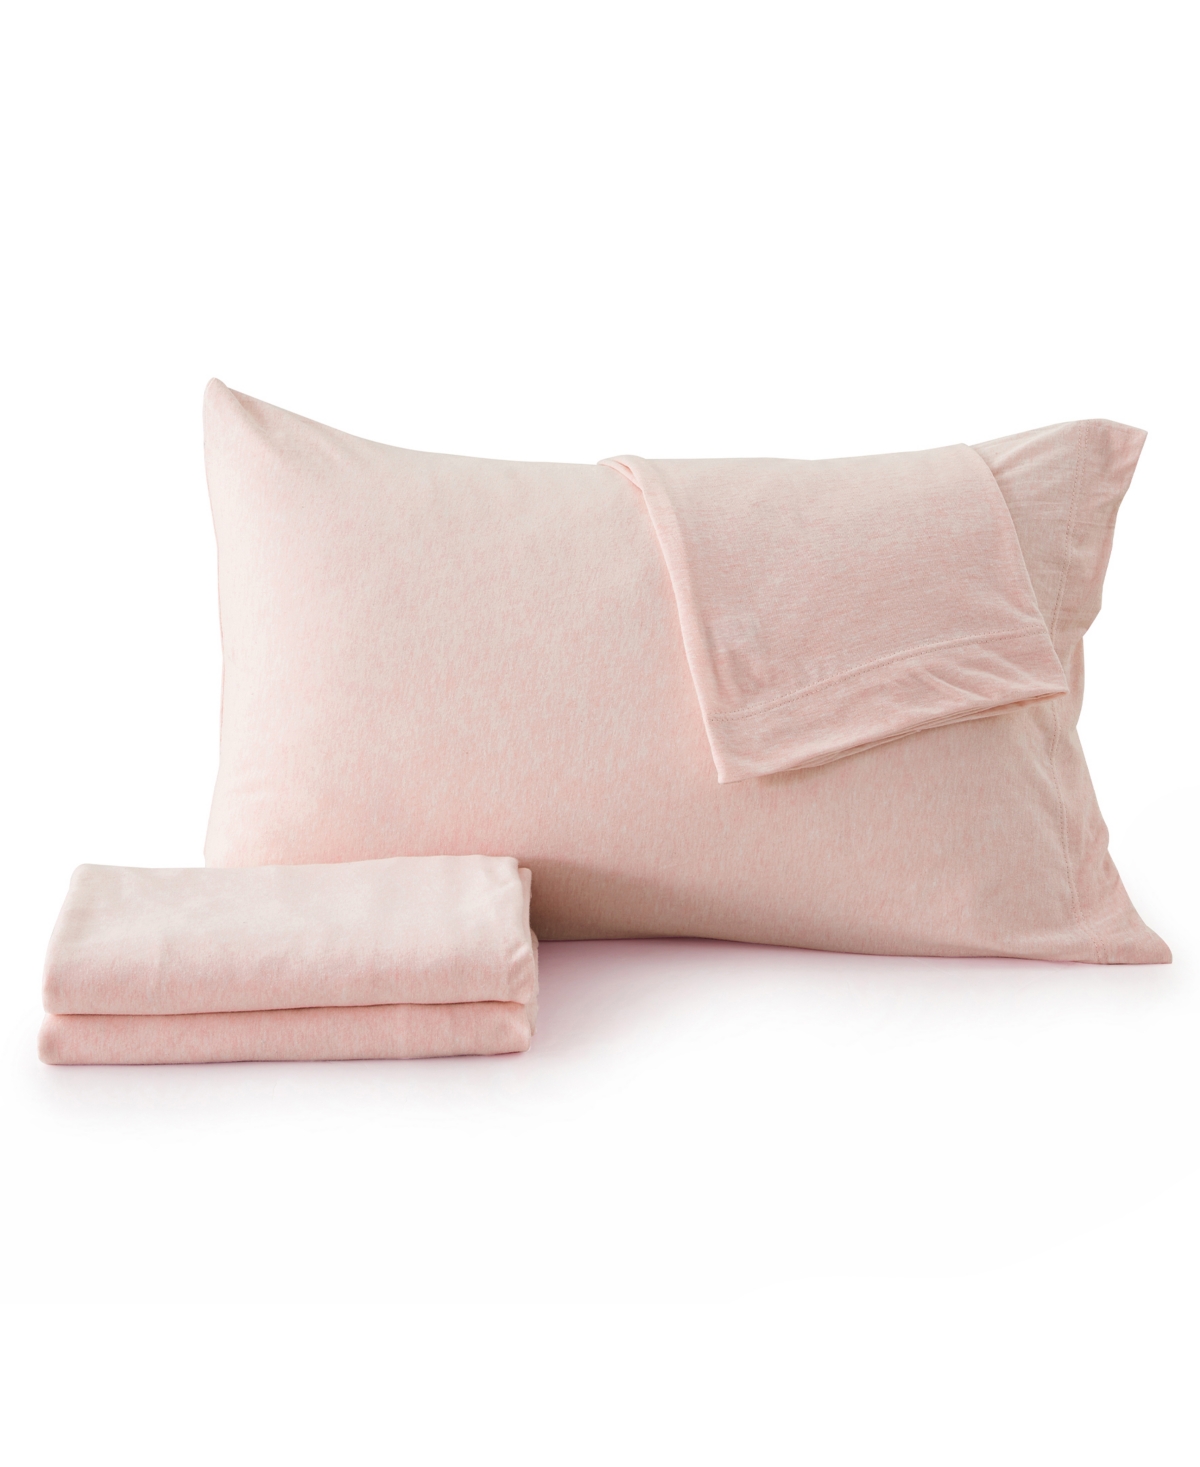 Shop Premium Comforts Heathered Melange T-shirt Jersey Knit Cotton Blend 4 Piece Sheet Set, California King In Blush Pink